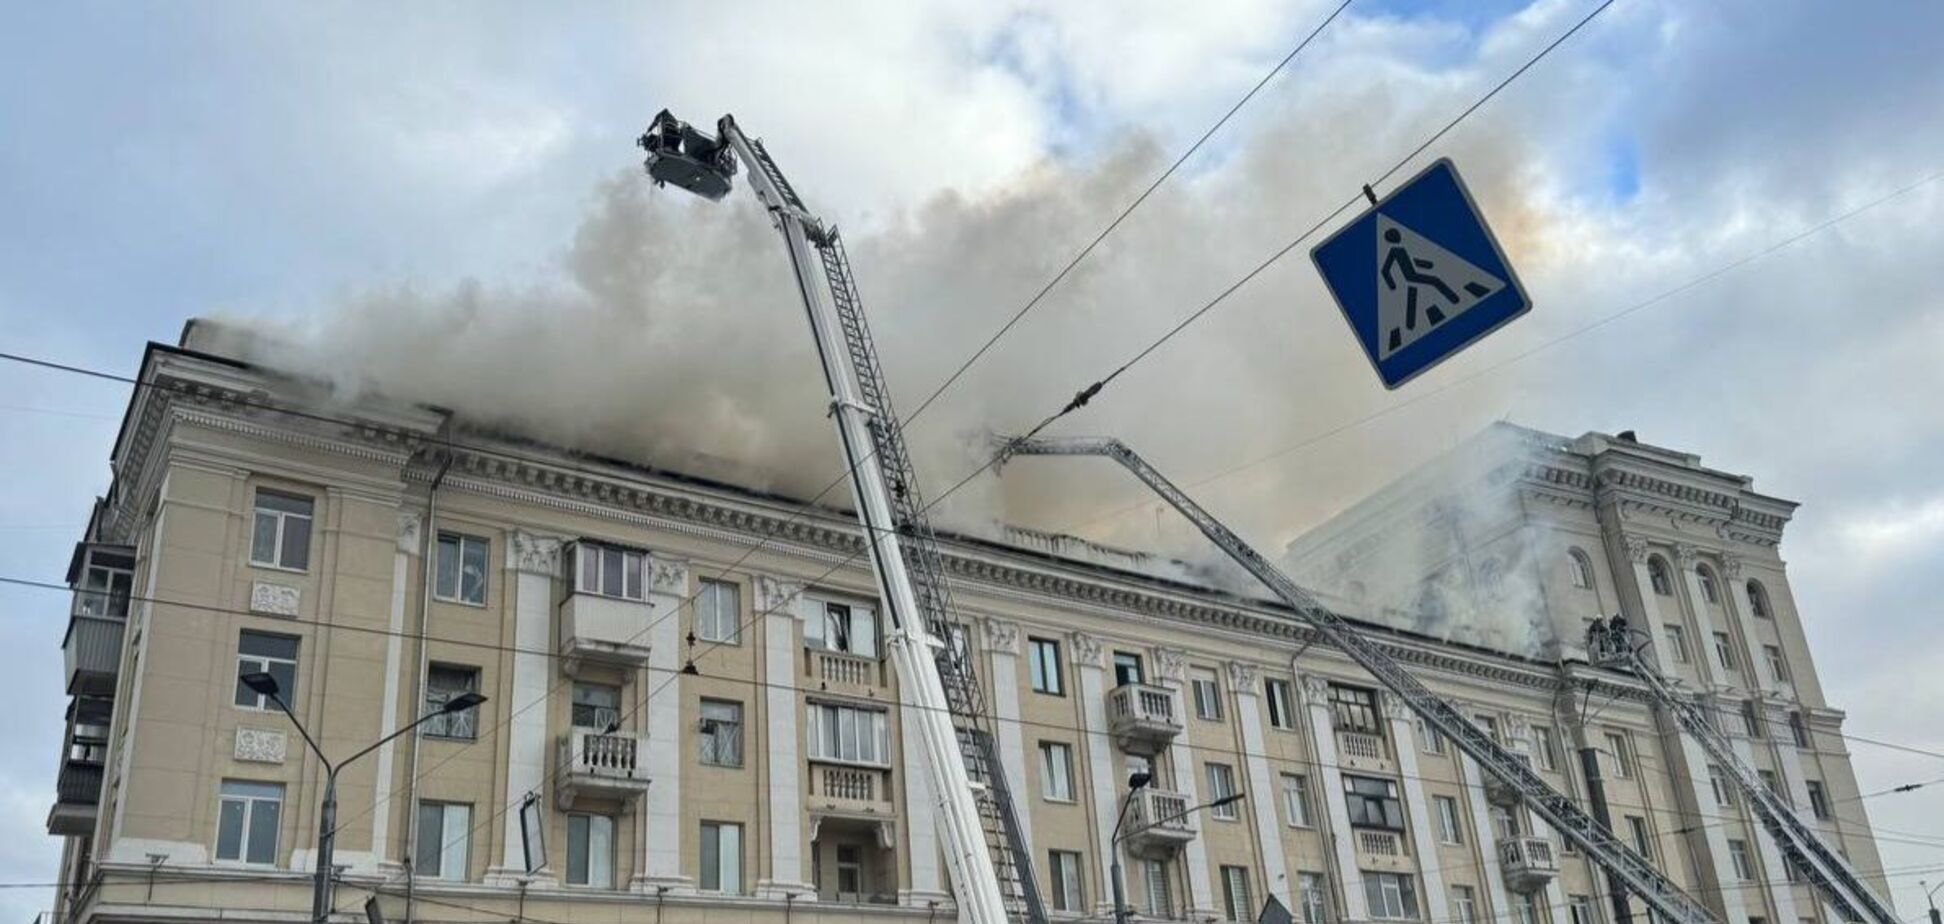 Россия ударила по Днепру, есть прилет в пятиэтажку: есть жертвы, десятки раненых, разбор завалов продолжается. Фото и видео